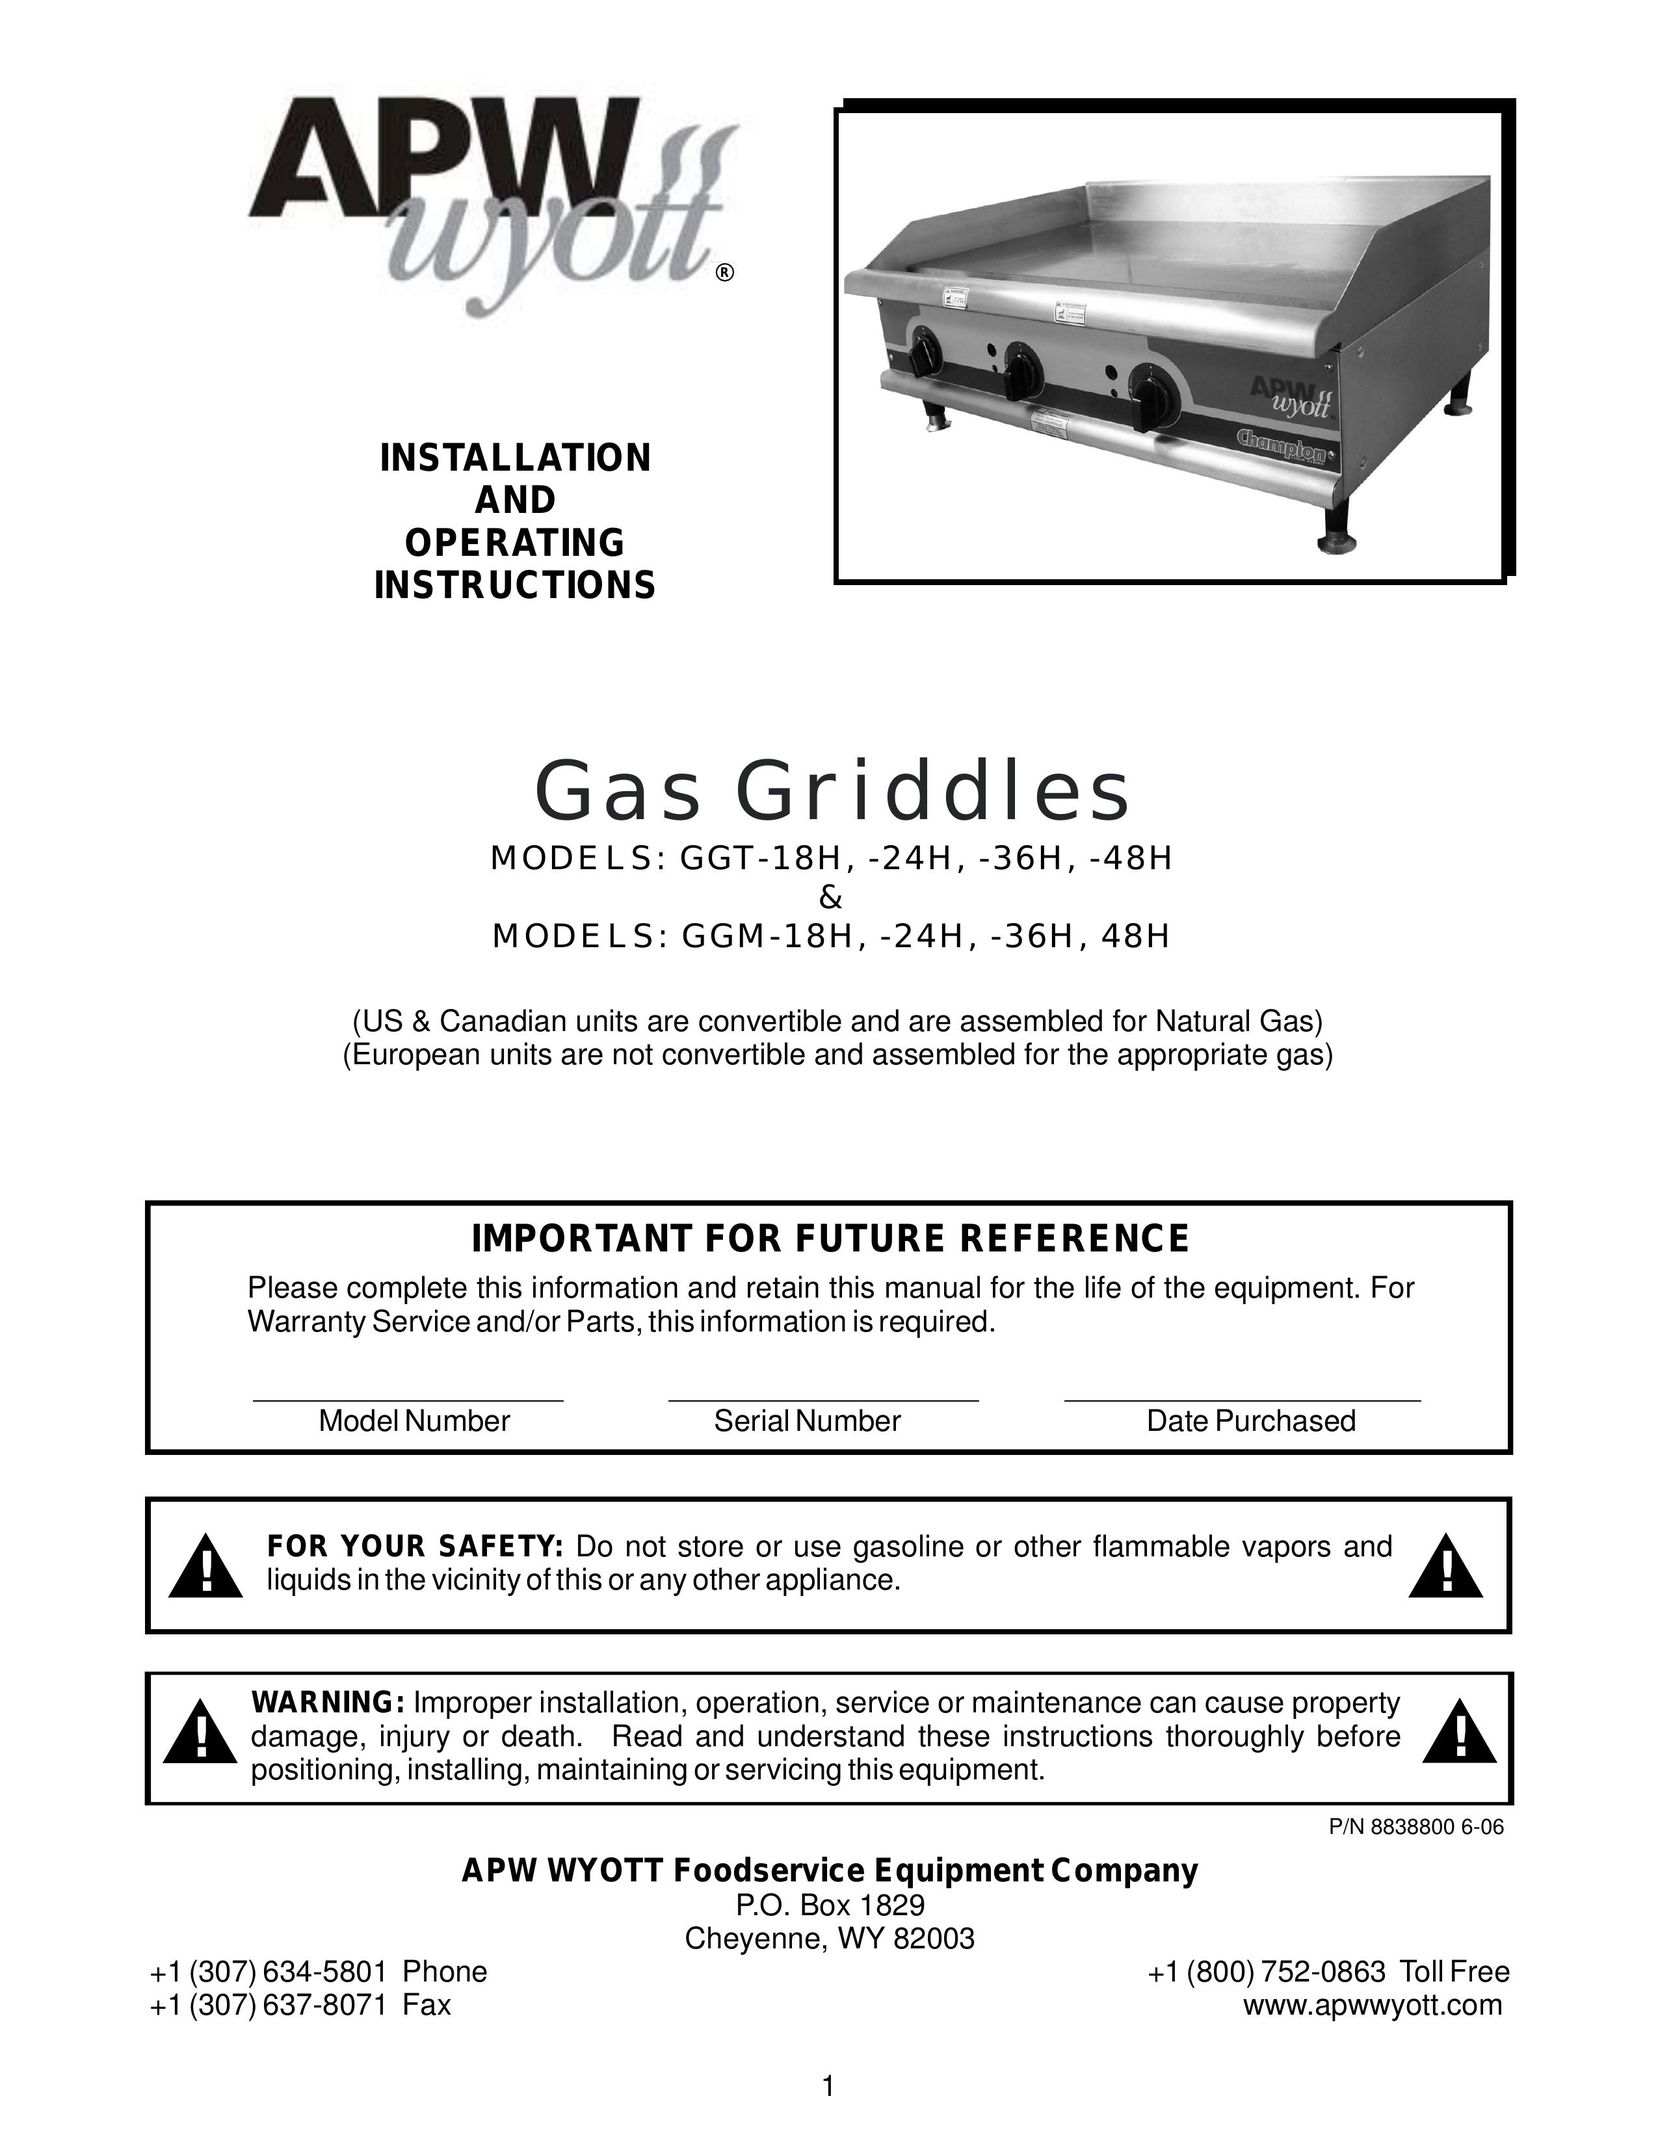 APW Wyott GGM-18H Griddle User Manual